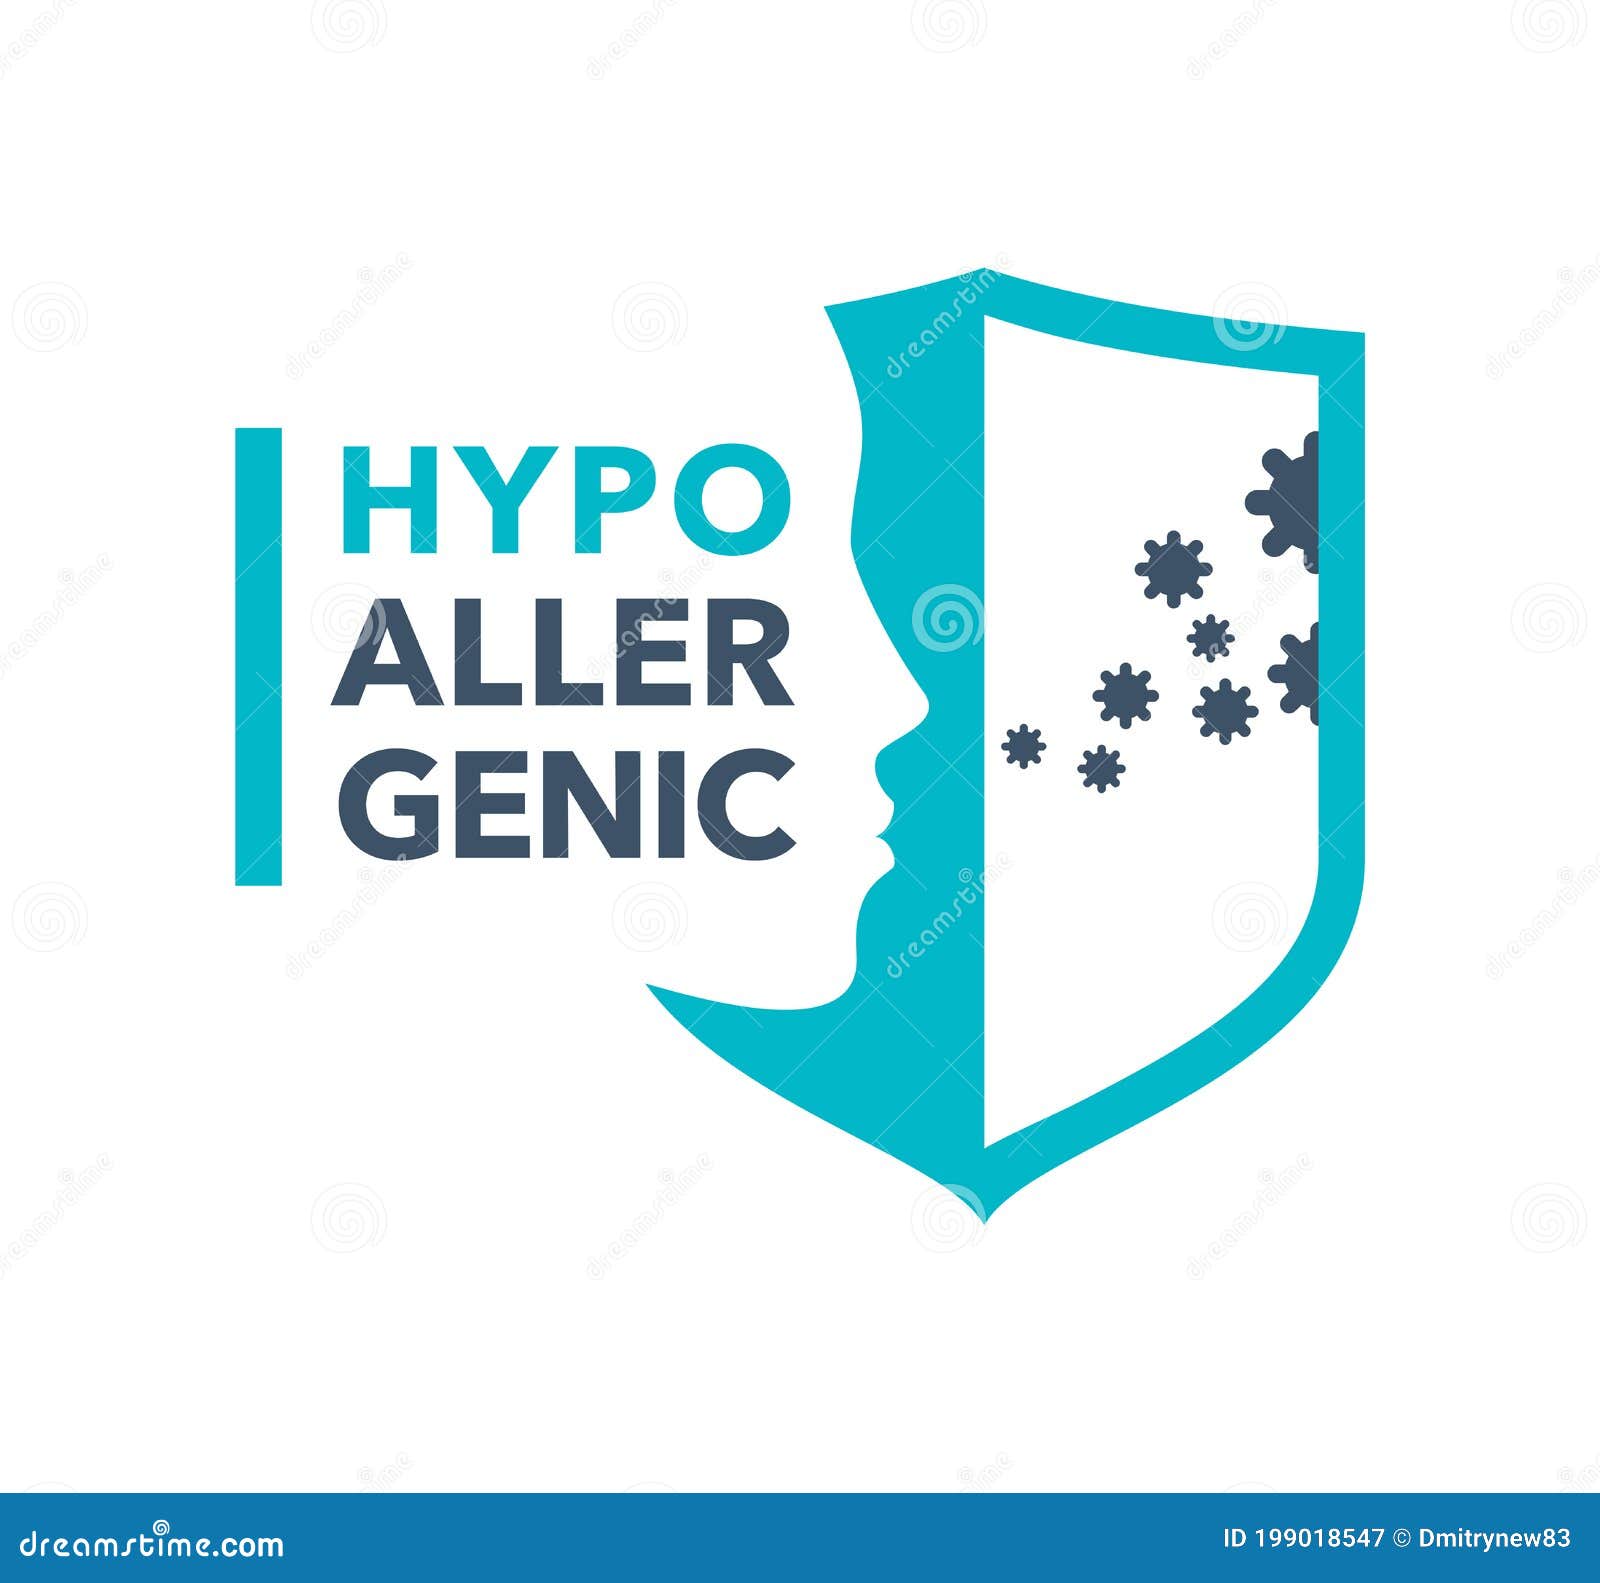 hypoallergenic emblem - anti allergy stamp